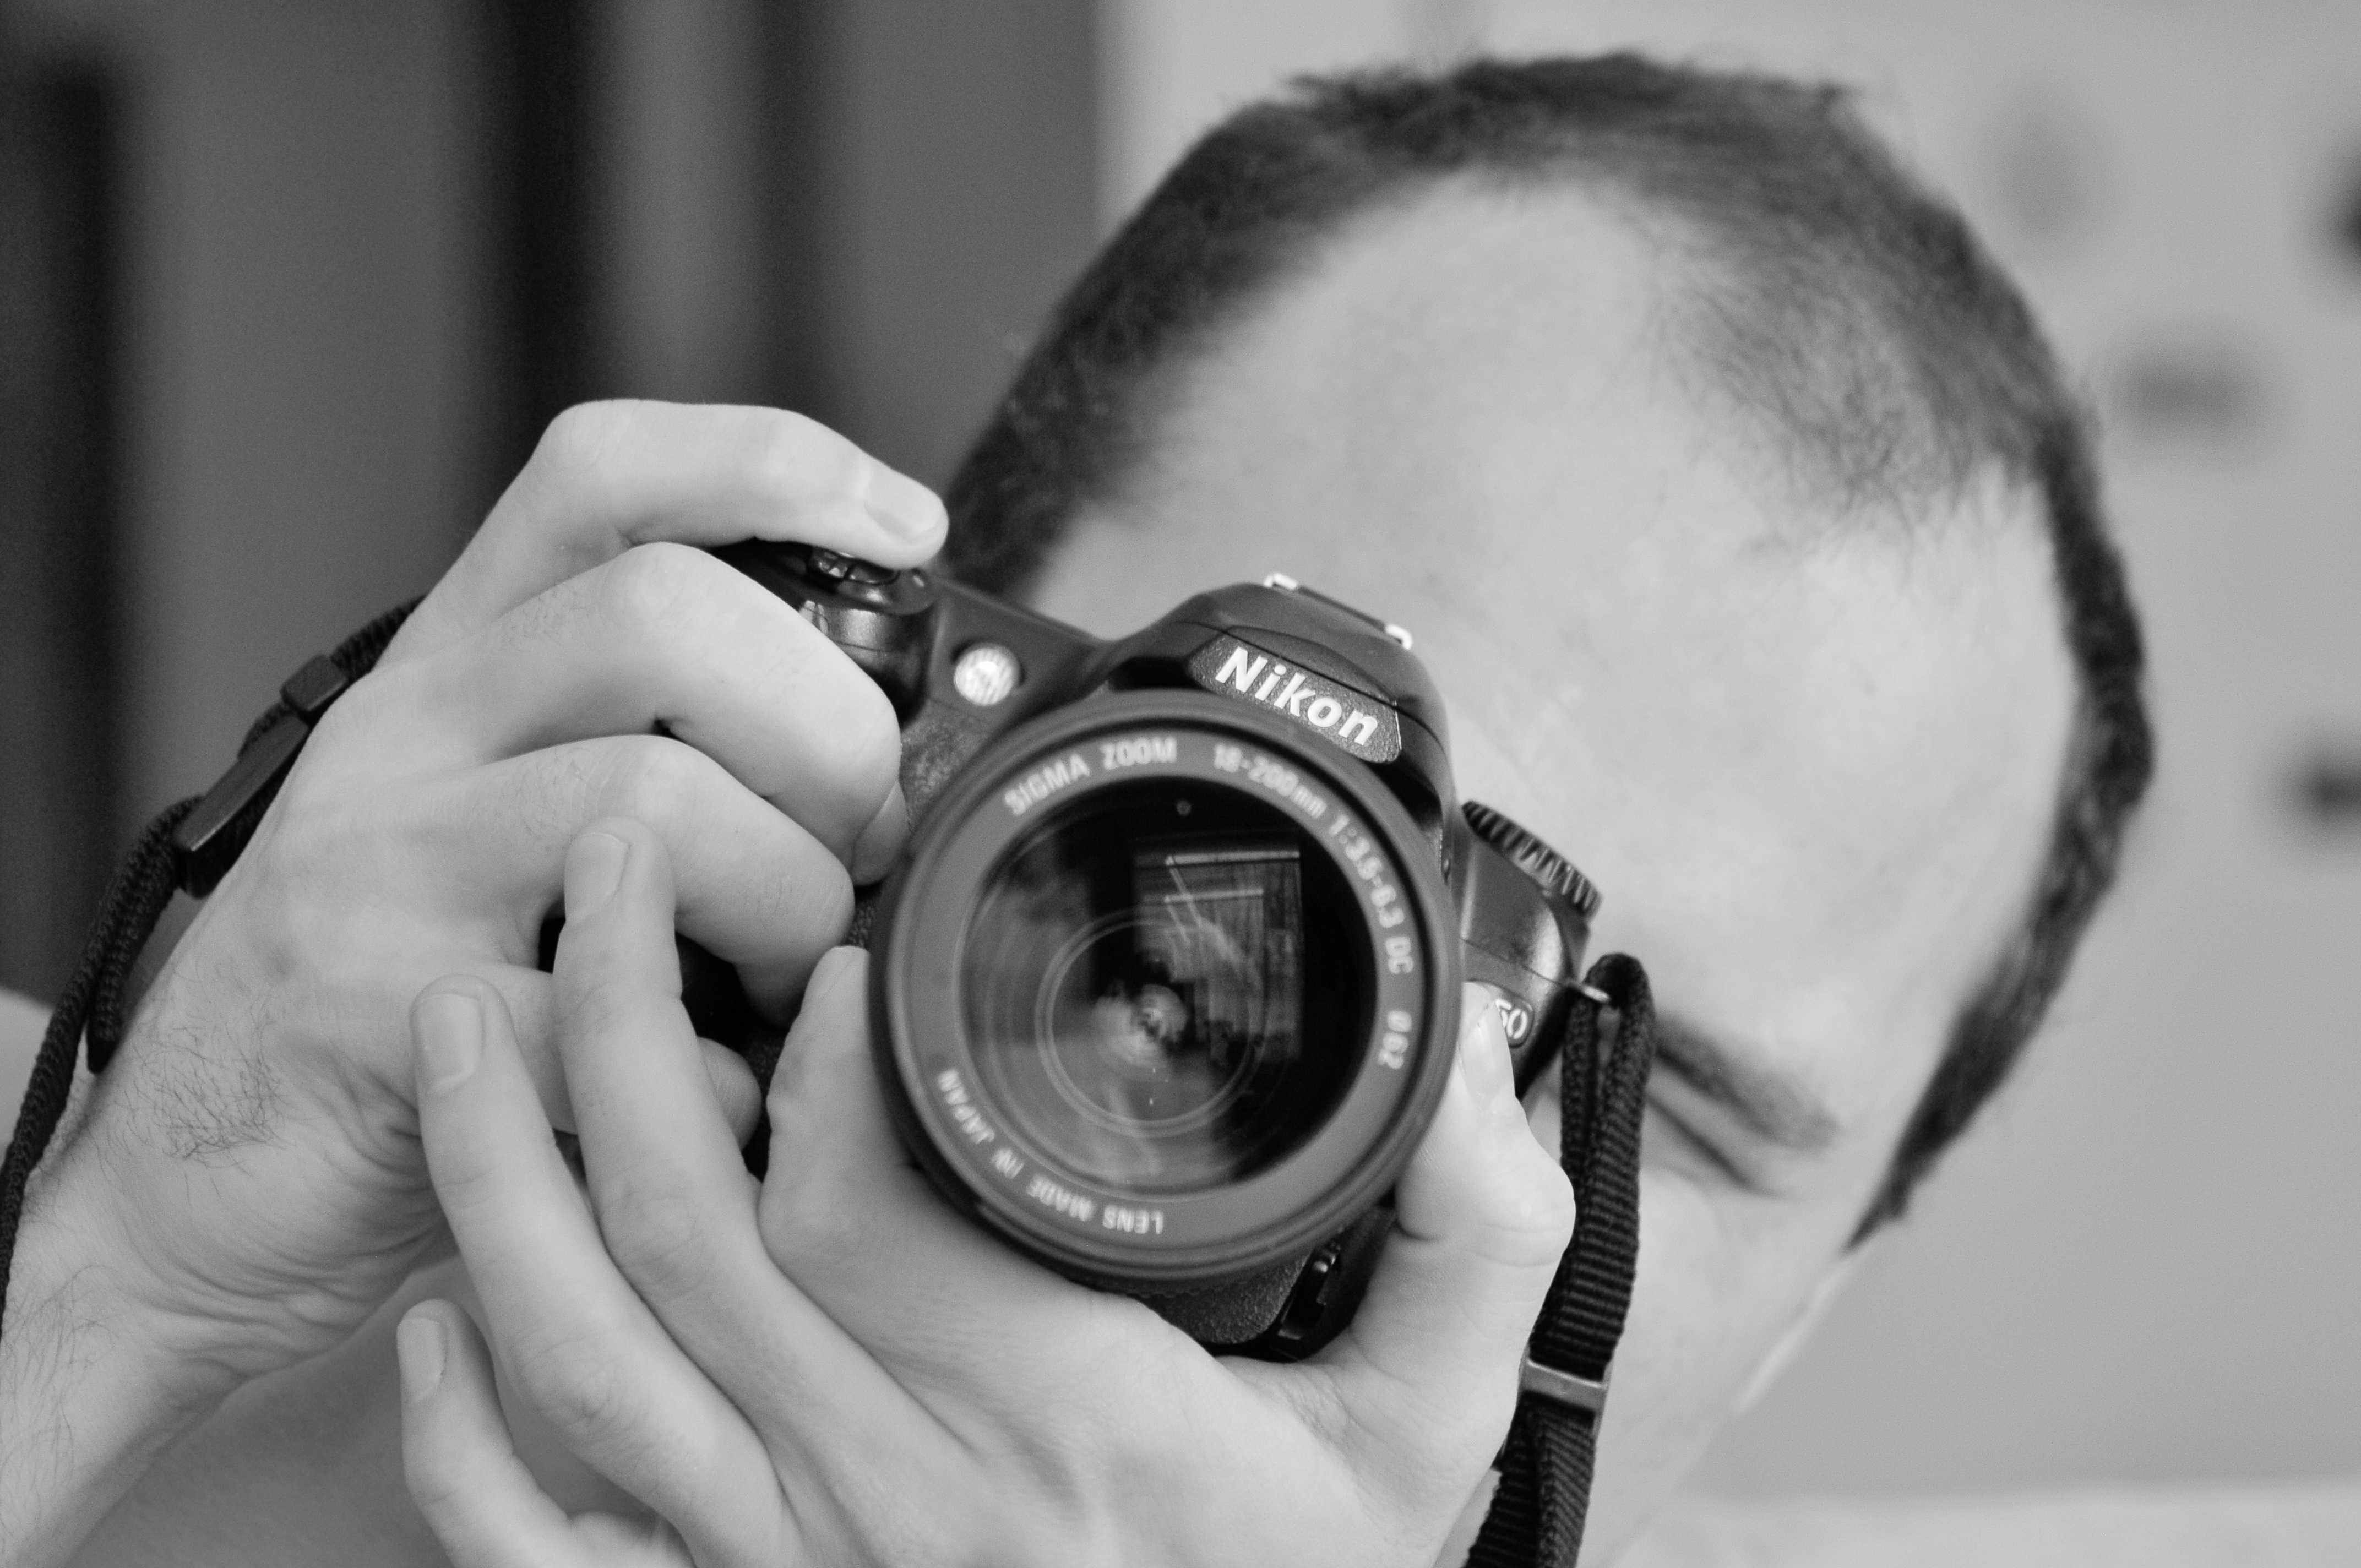 Брайан смит (фотограф) - википедия